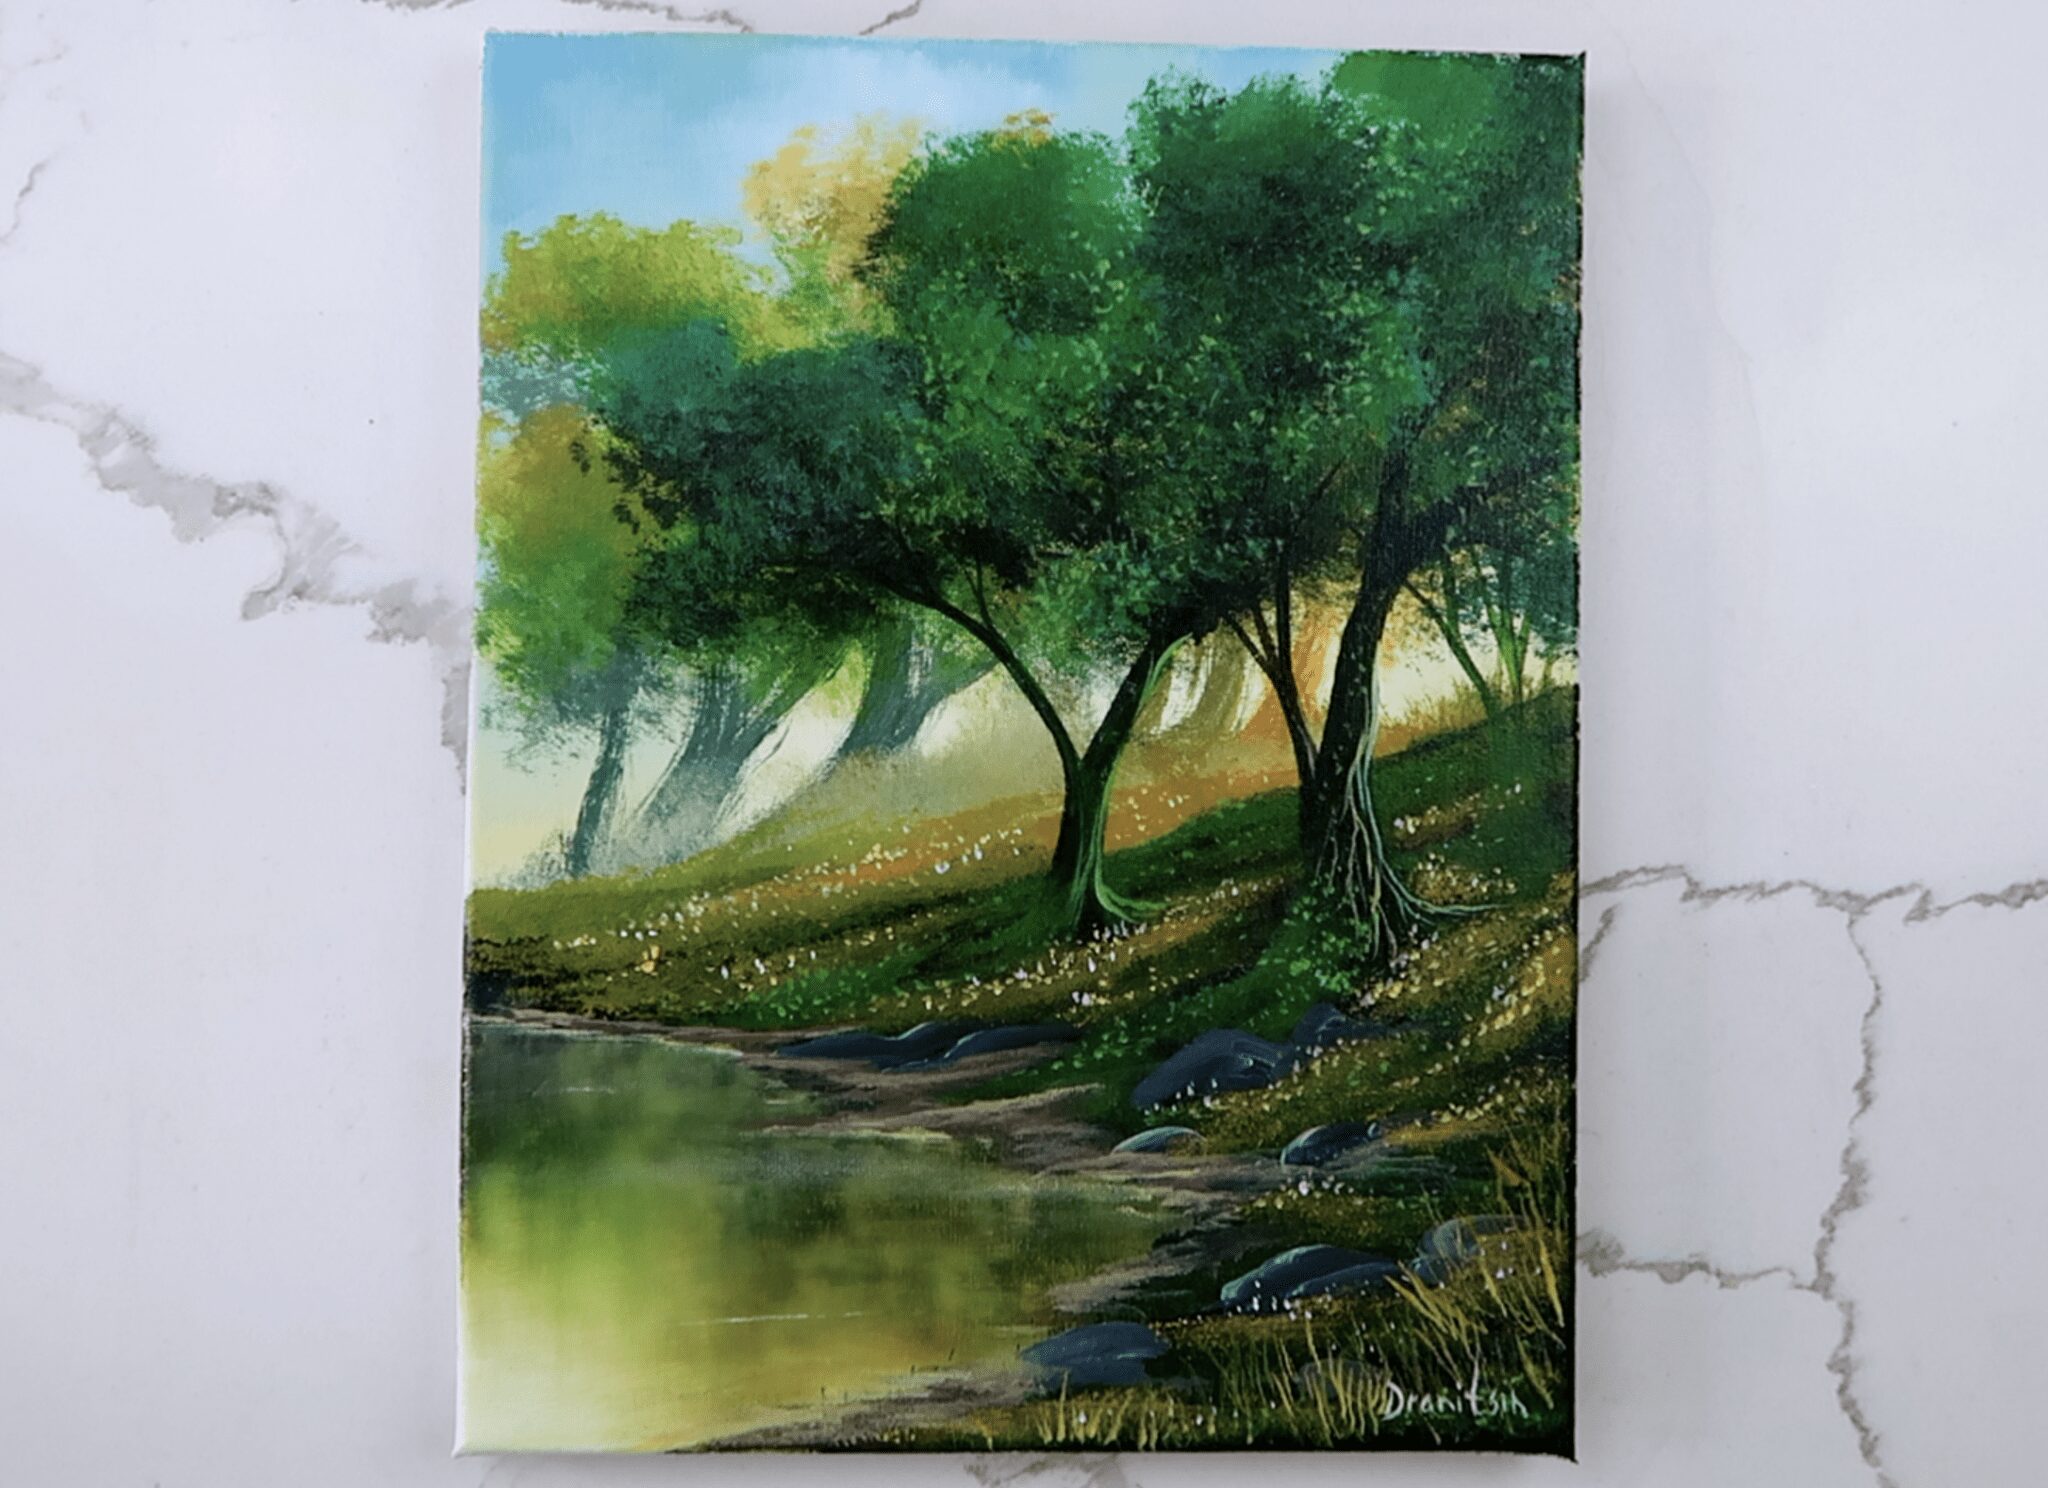 Sponge painting technique / Layered hills landscape painting